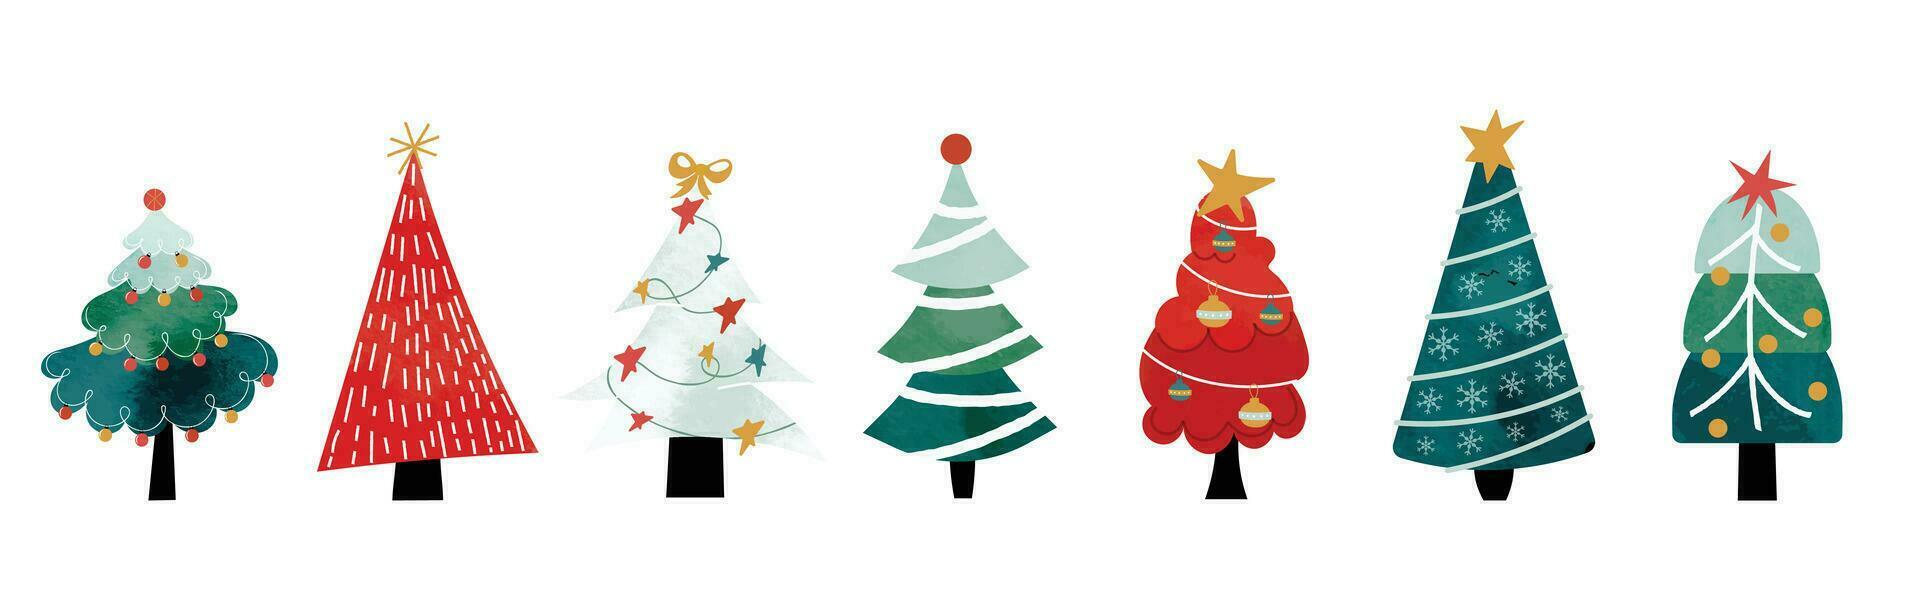 uppsättning av vattenfärg dekorativ jul träd vektor illustration. element av dekorativ bollar, dekorativ ljus, stjärna, band, snöflinga. design för kort, komisk, skriva ut, affisch, baner, dekoration.